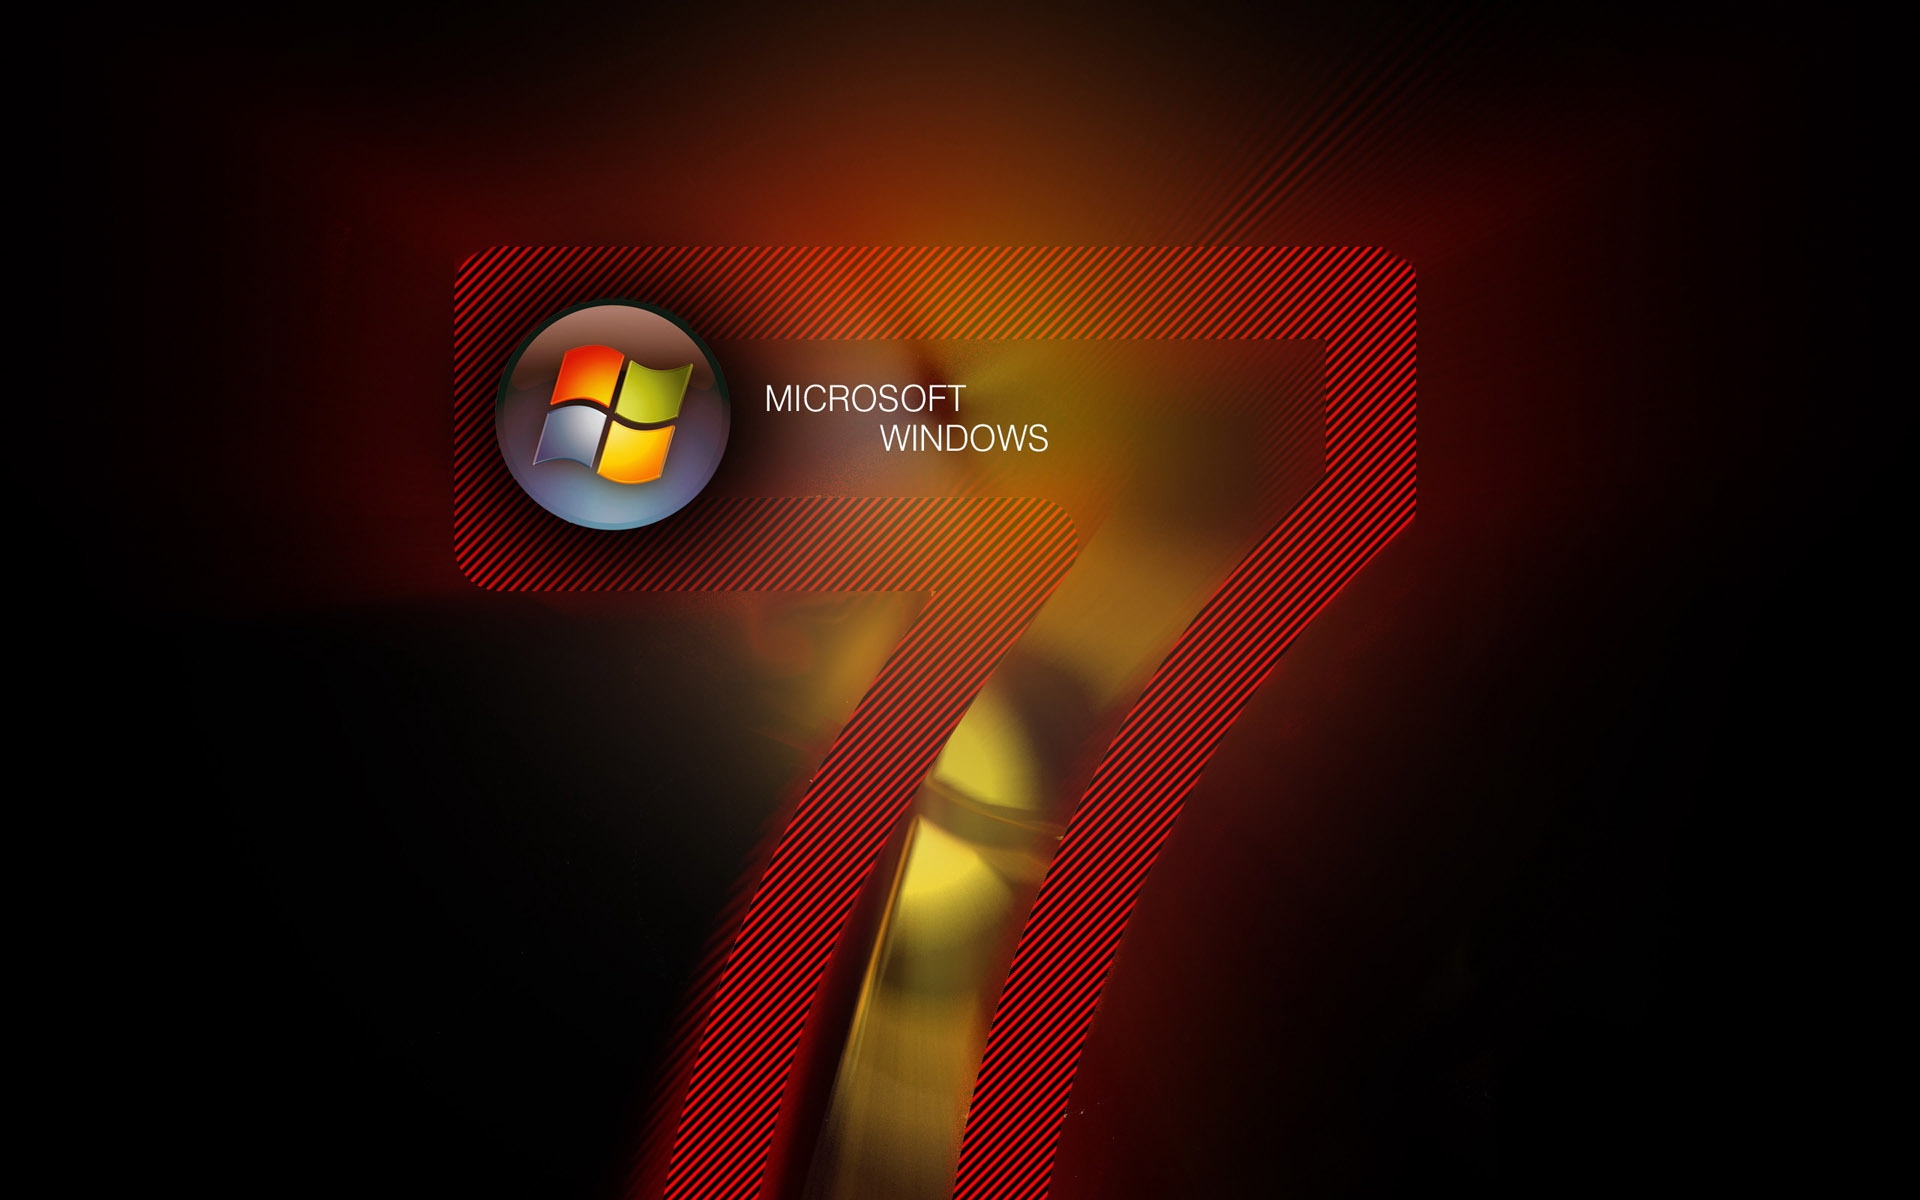 Картинки Windows 7, microsoft, красный, логотип, черный фото и обои на рабочий стол